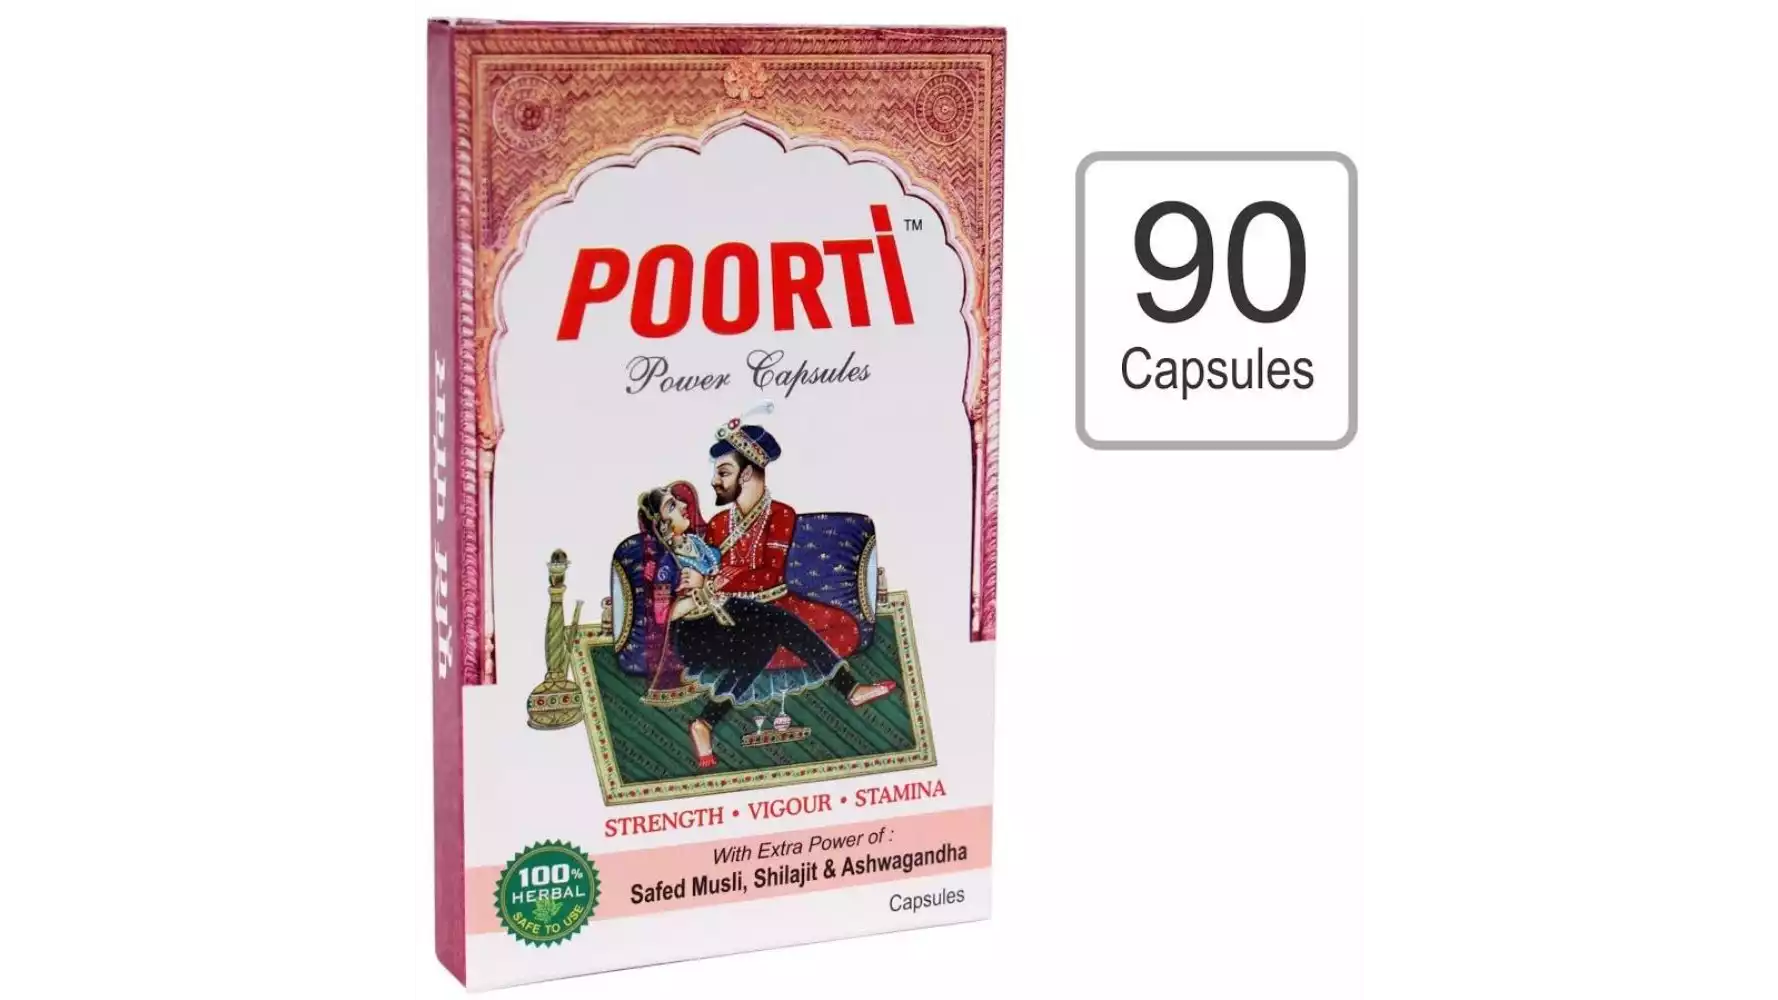 Poorti Power Capsules For Men (90caps)